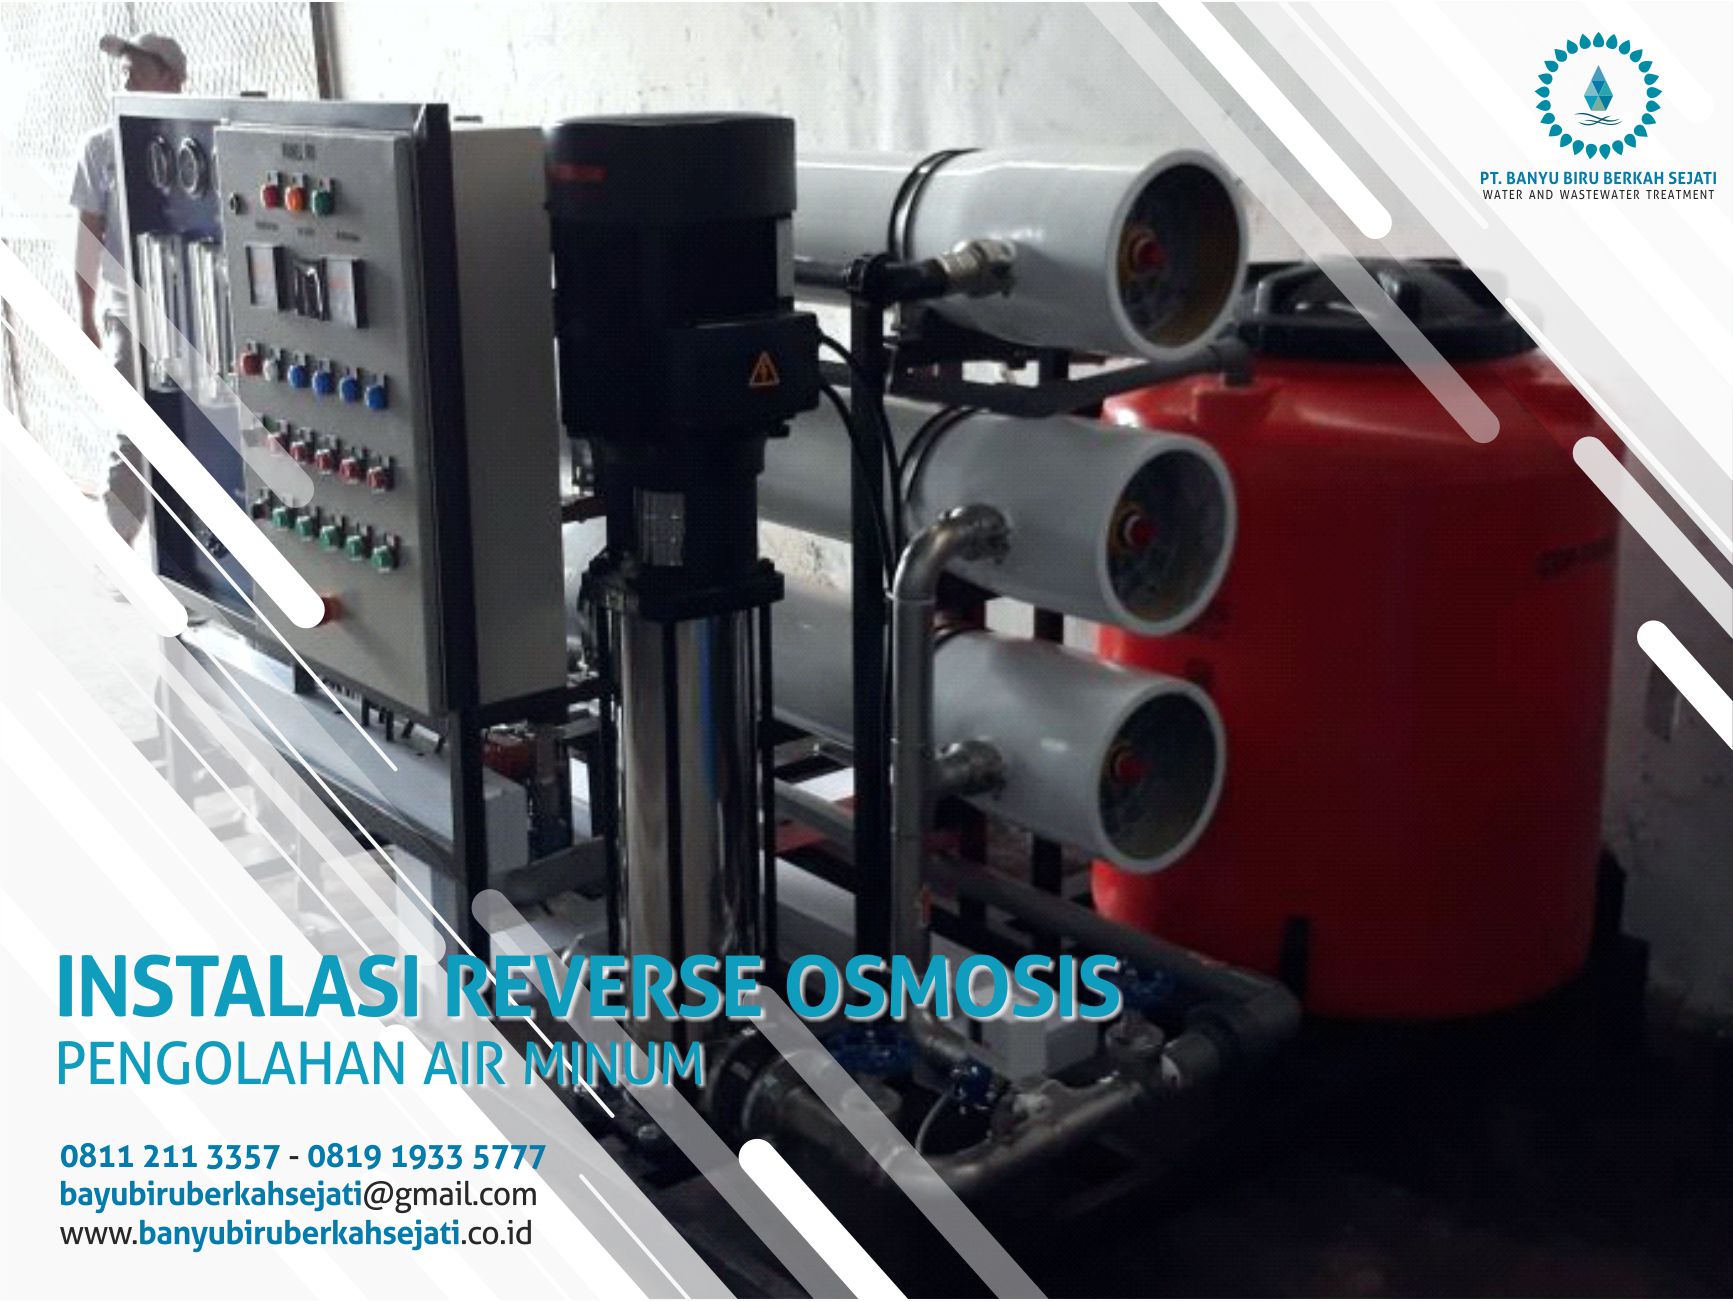 Manfaat Reverse Osmosis untuk Konsumsi Air Bersih